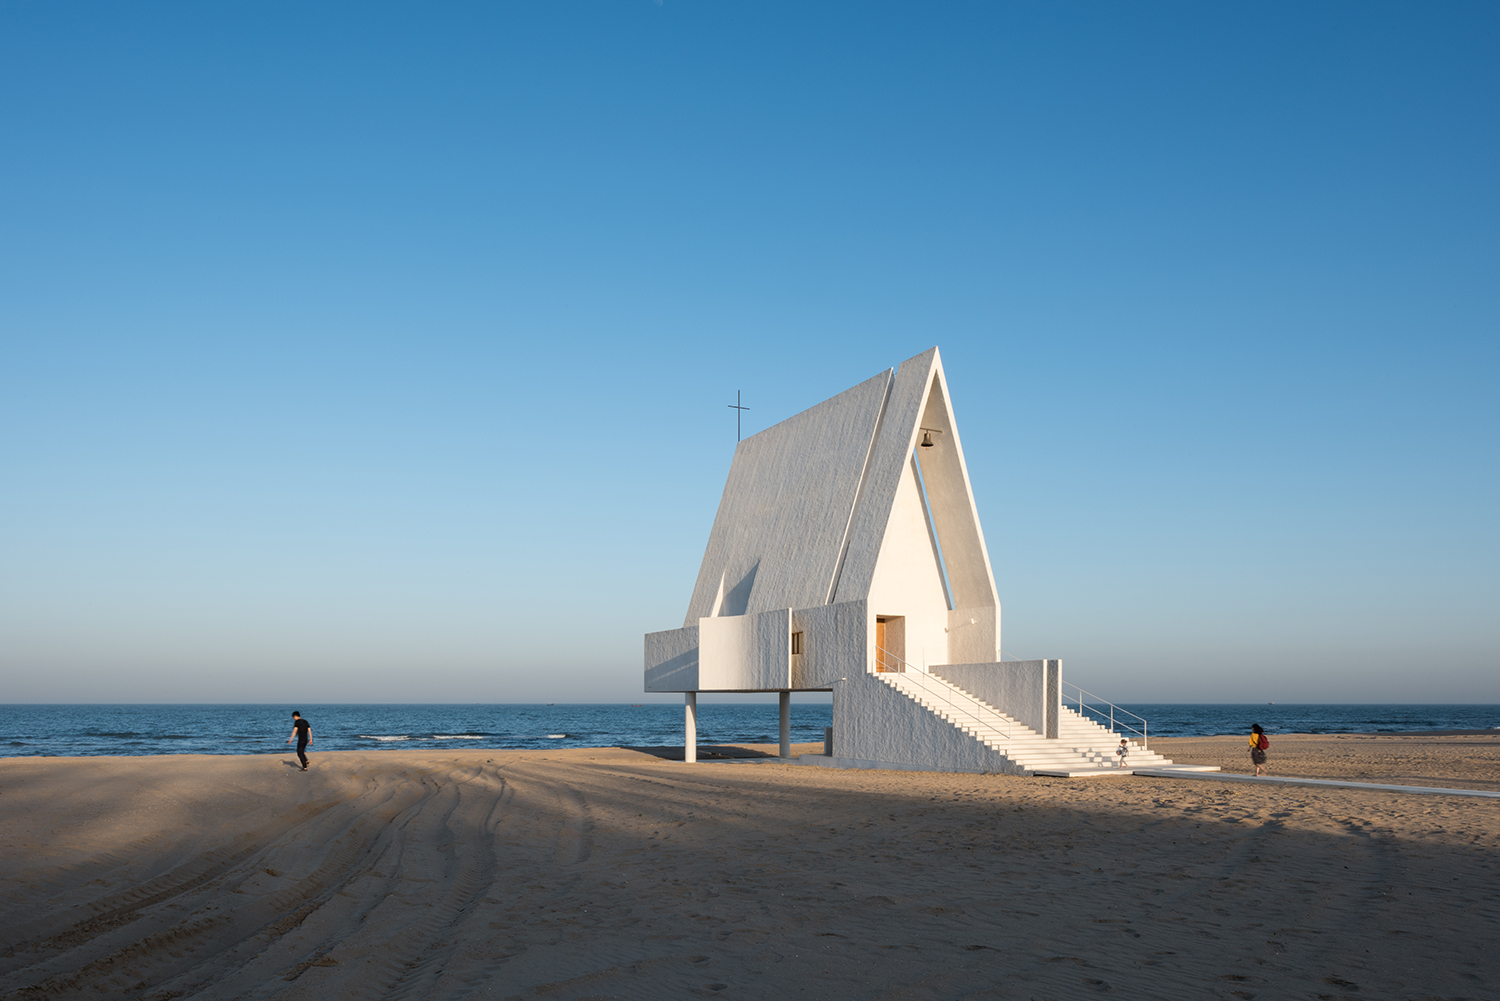 011-seashore-chapel-china-by-vector-architects.jpg